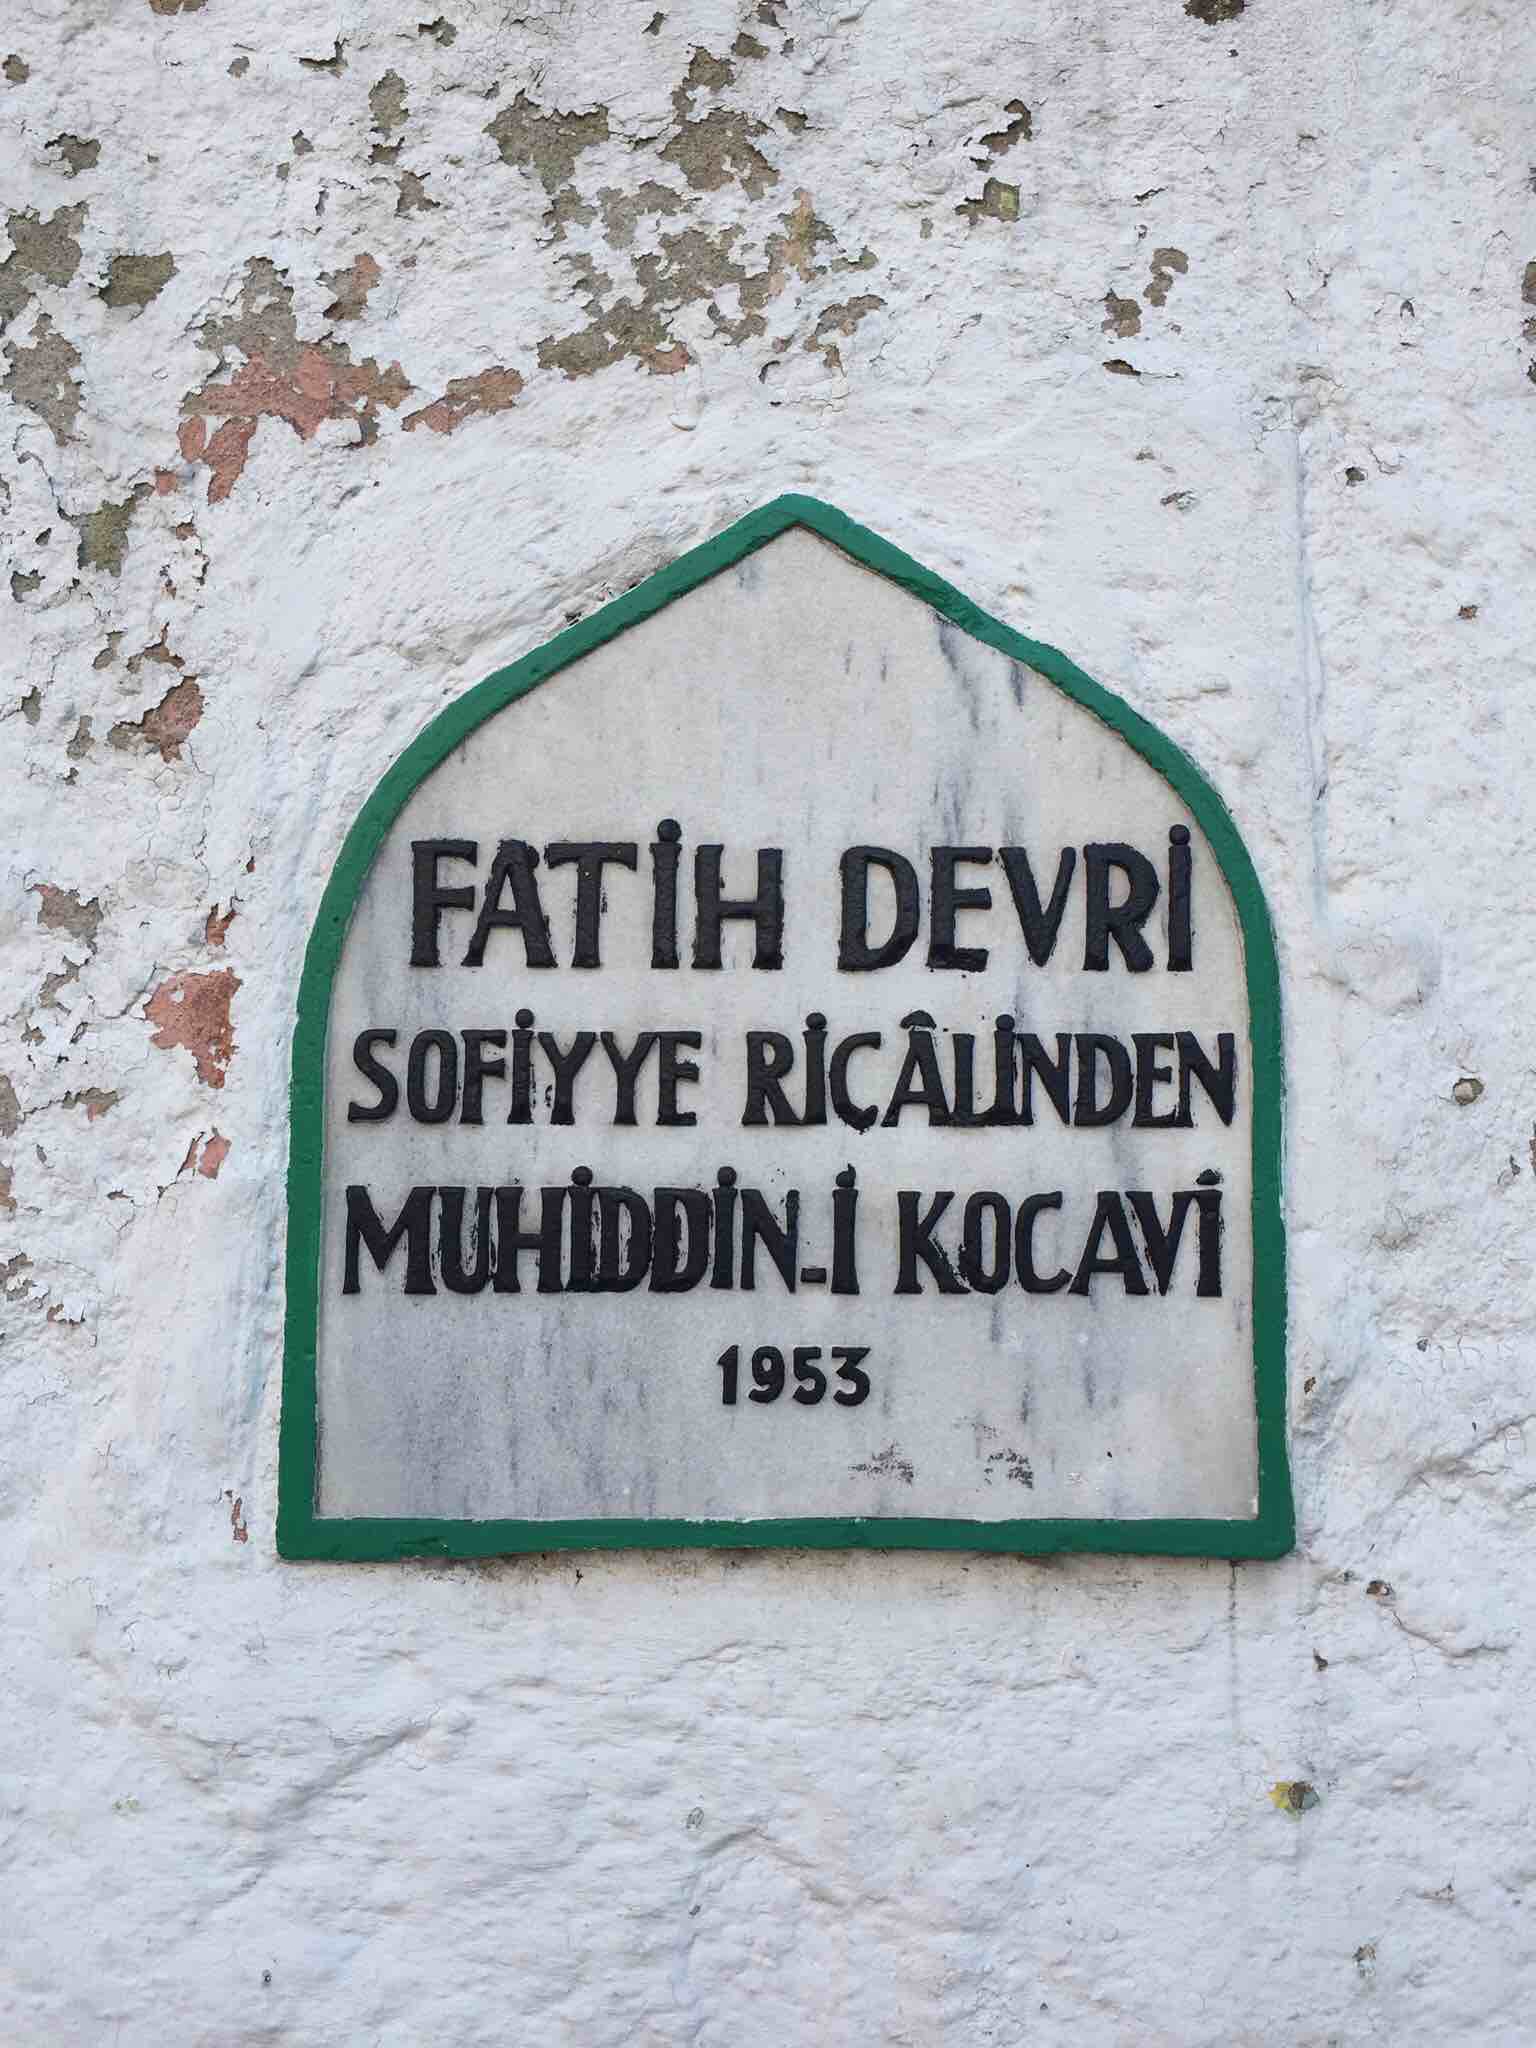 Muhiddin Kocavi